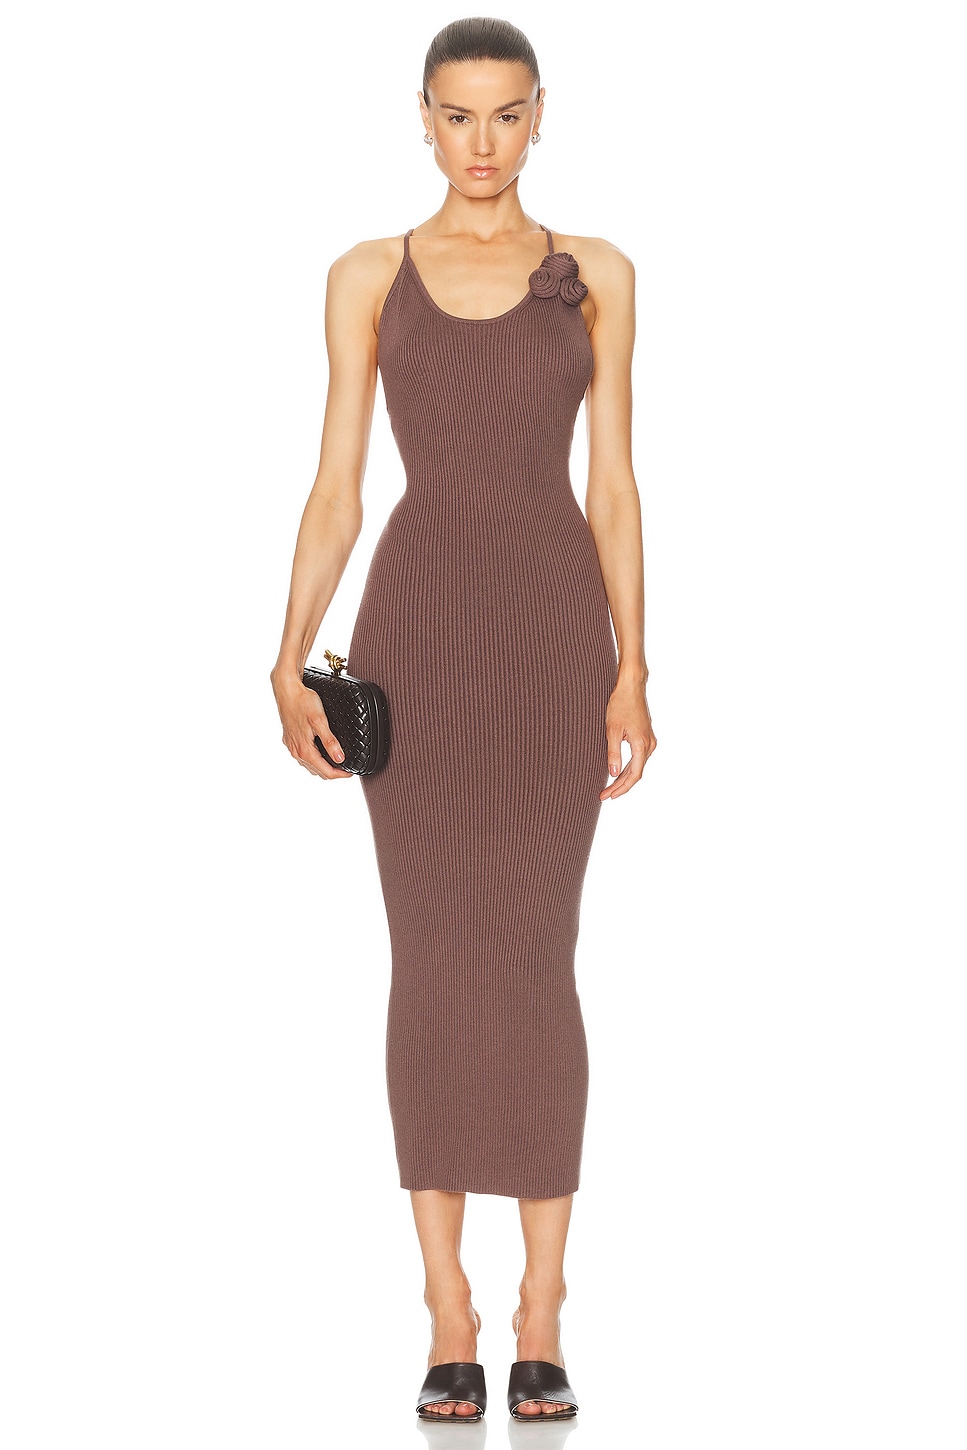 Dara Rosette Midi Dress in Brown